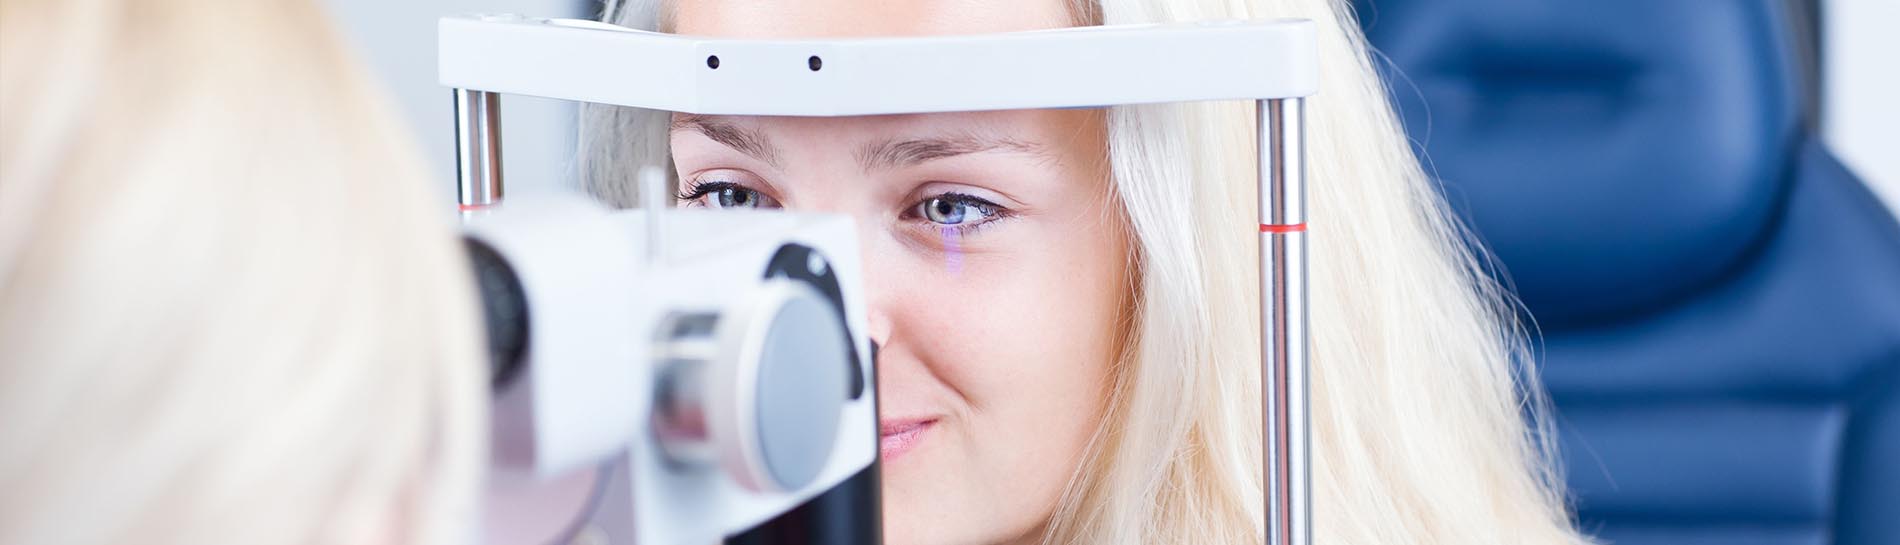 műtét nélküli látásjavulás esetei